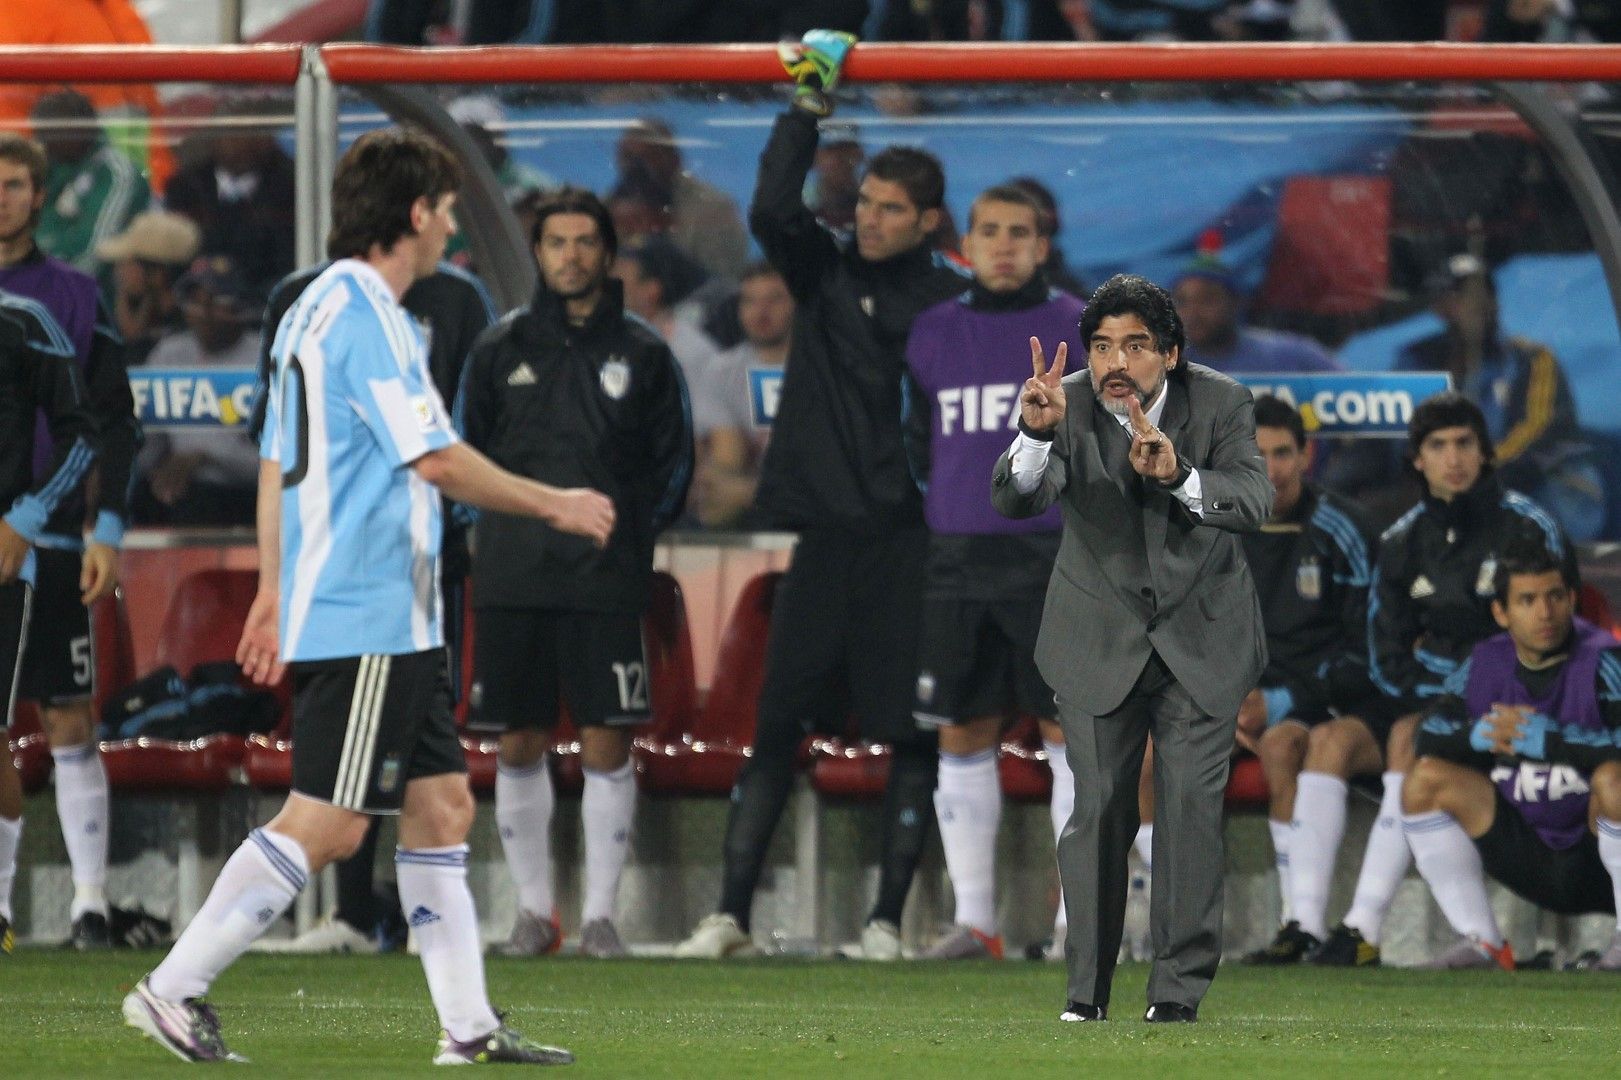 Треньорът Диего Марадона опитва да свали напрежението от Лео, но без дори да го осъзнава, той го е засилил до крайна степен дори само с присъствието си на скамейката на Аржентина. Сравненията не спират.